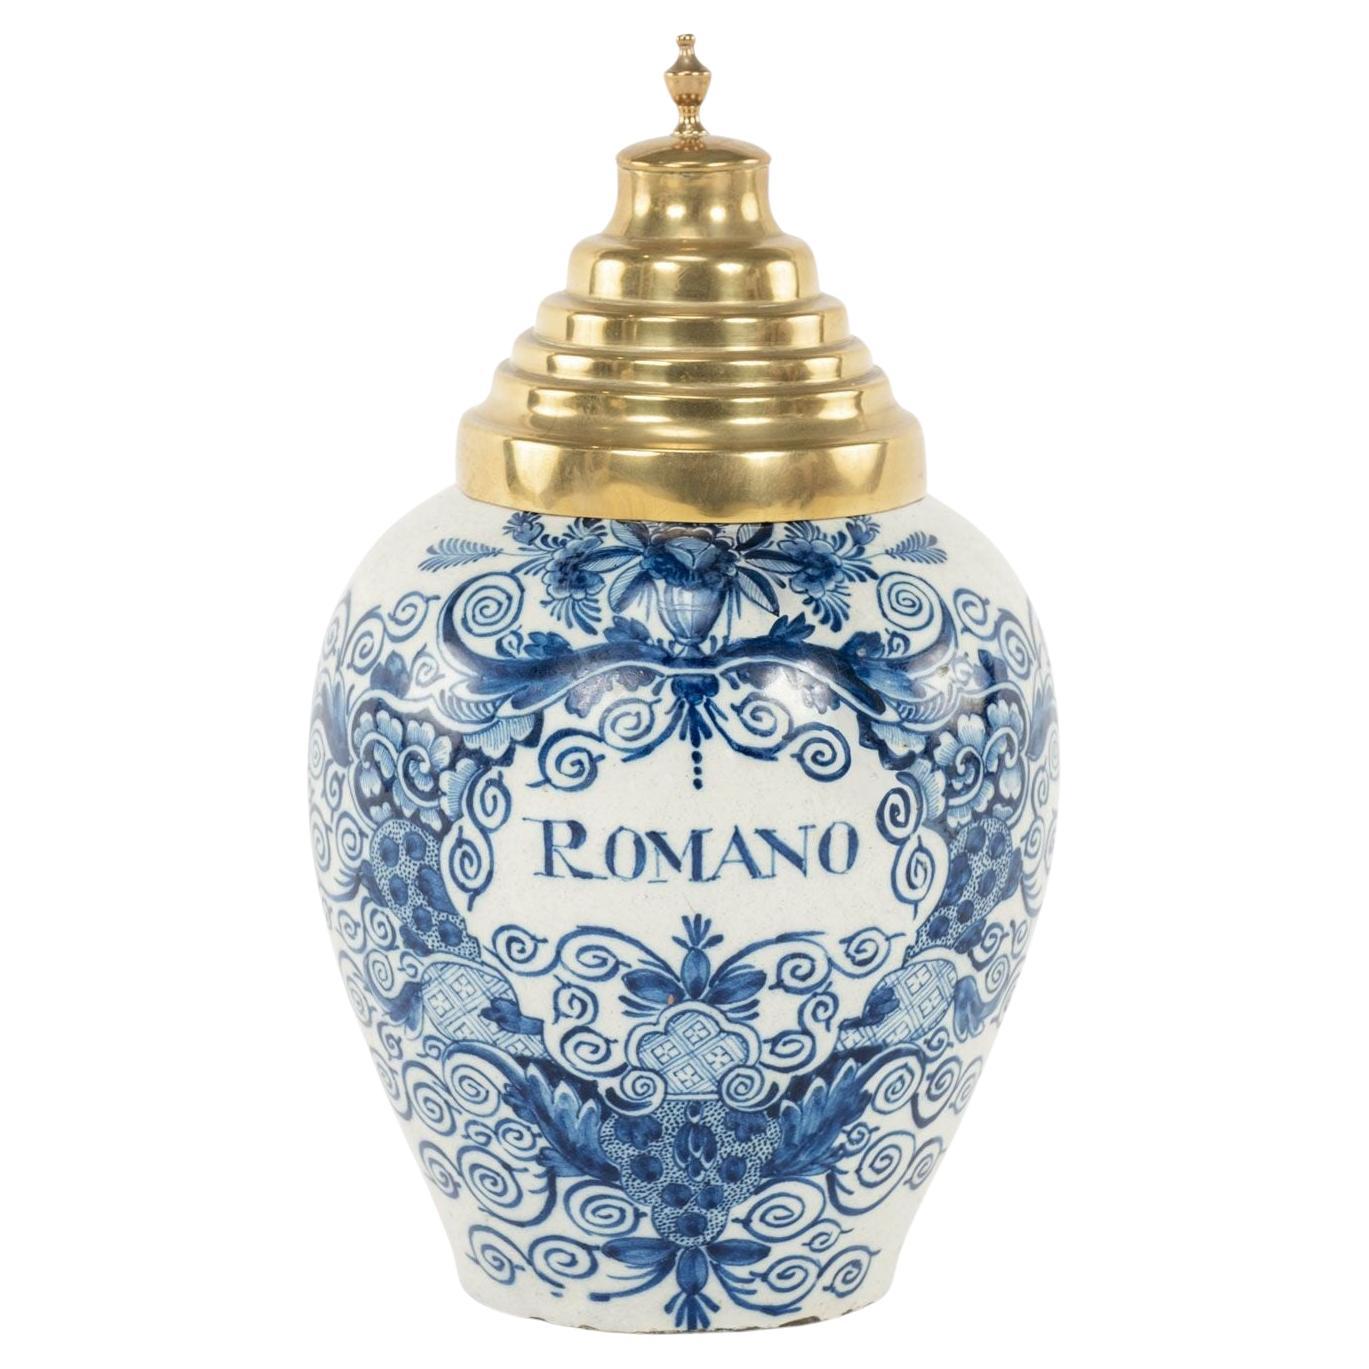 Delft Blue and White Delft "Romano" Tobacco Jar For Sale